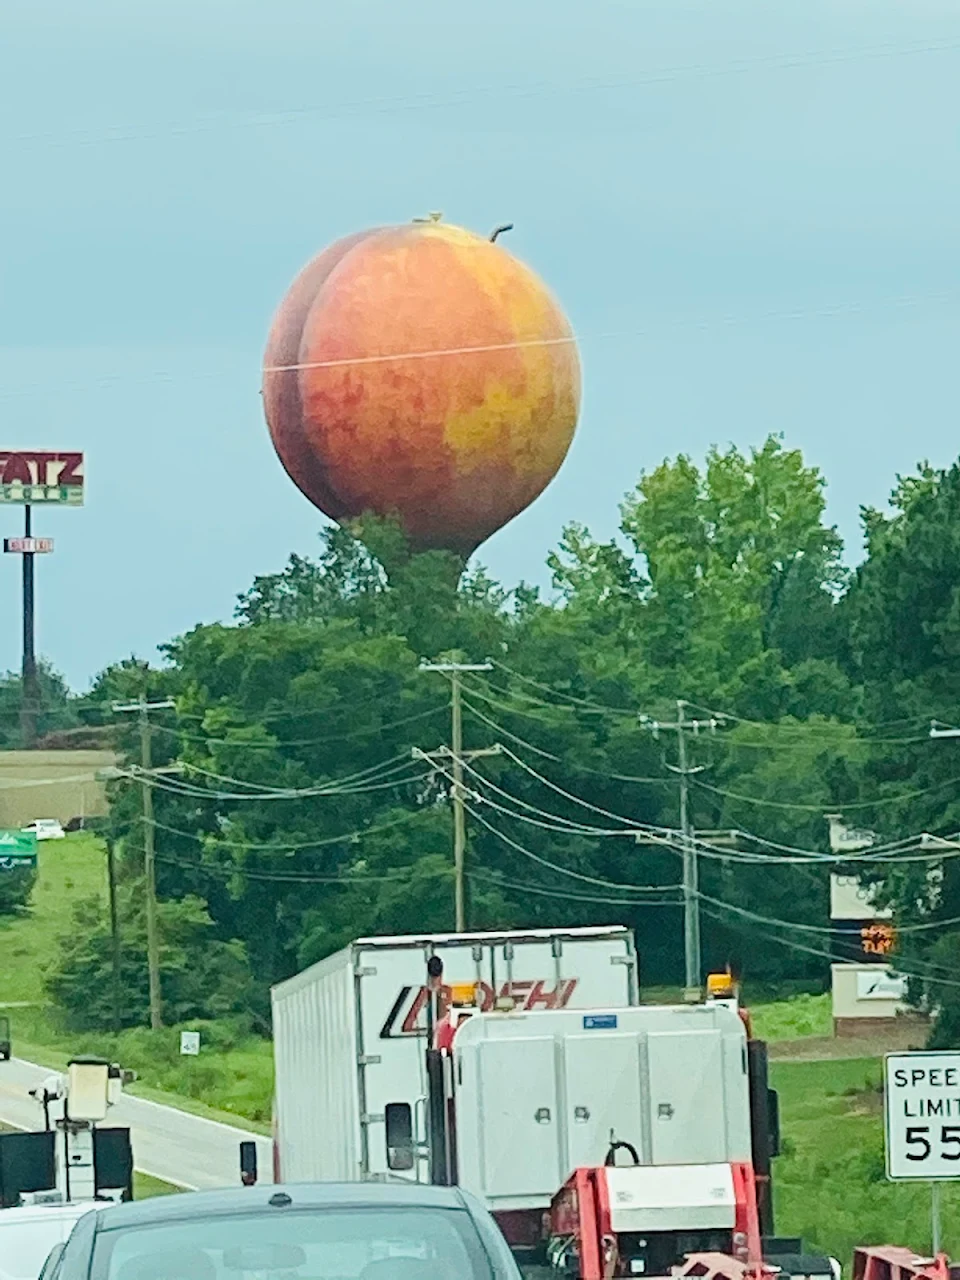 So I found this peach...